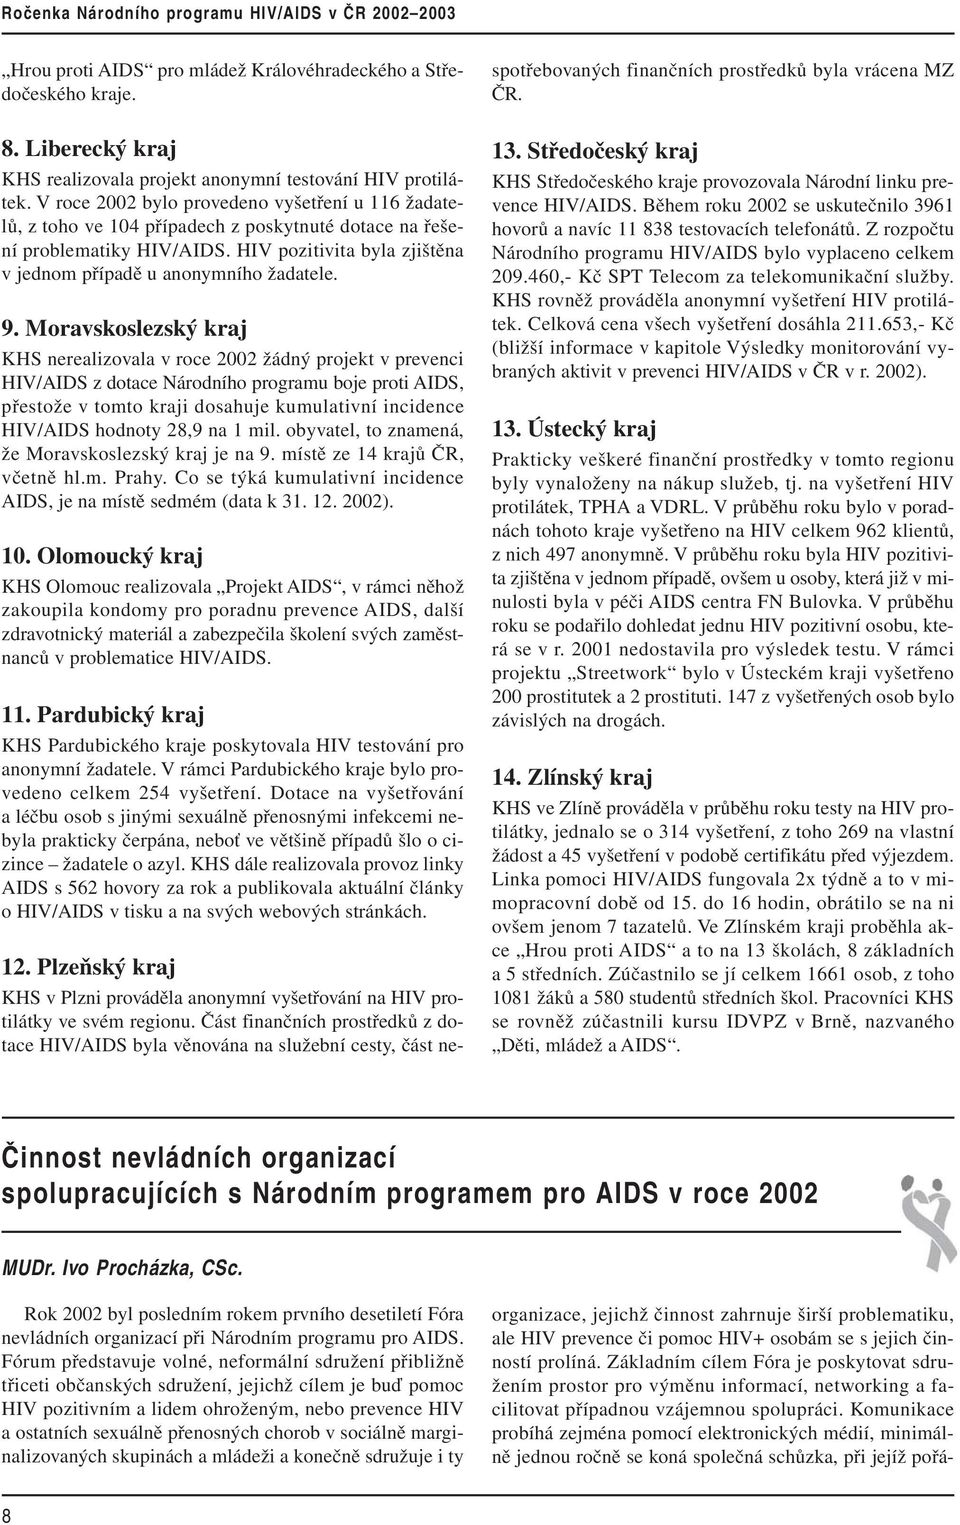 9. Moravskoslezský kraj KHS nerealizovala v roce 2002 žádný projekt v prevenci HIV/AIDS z dotace Národního programu boje proti AIDS, přestože v tomto kraji dosahuje kumulativní incidence HIV/AIDS